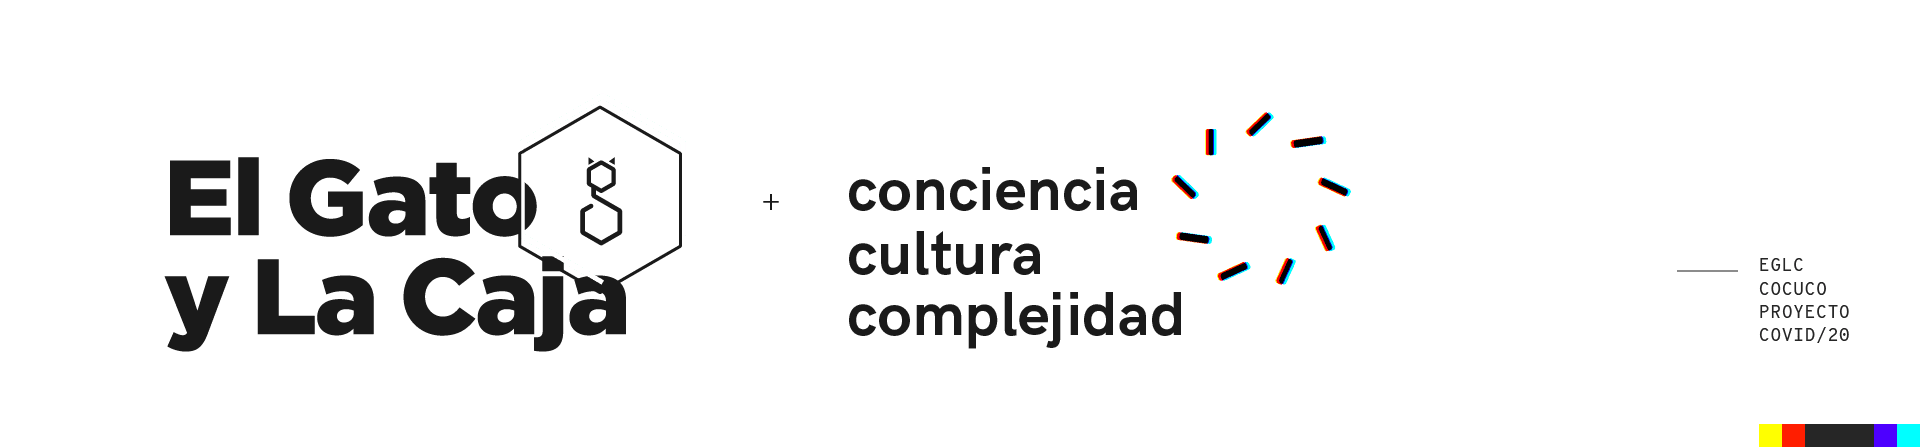 El Gato y La Caja + Laboratorio de Conciencia, Cultura y Complejidad (COCUCO)